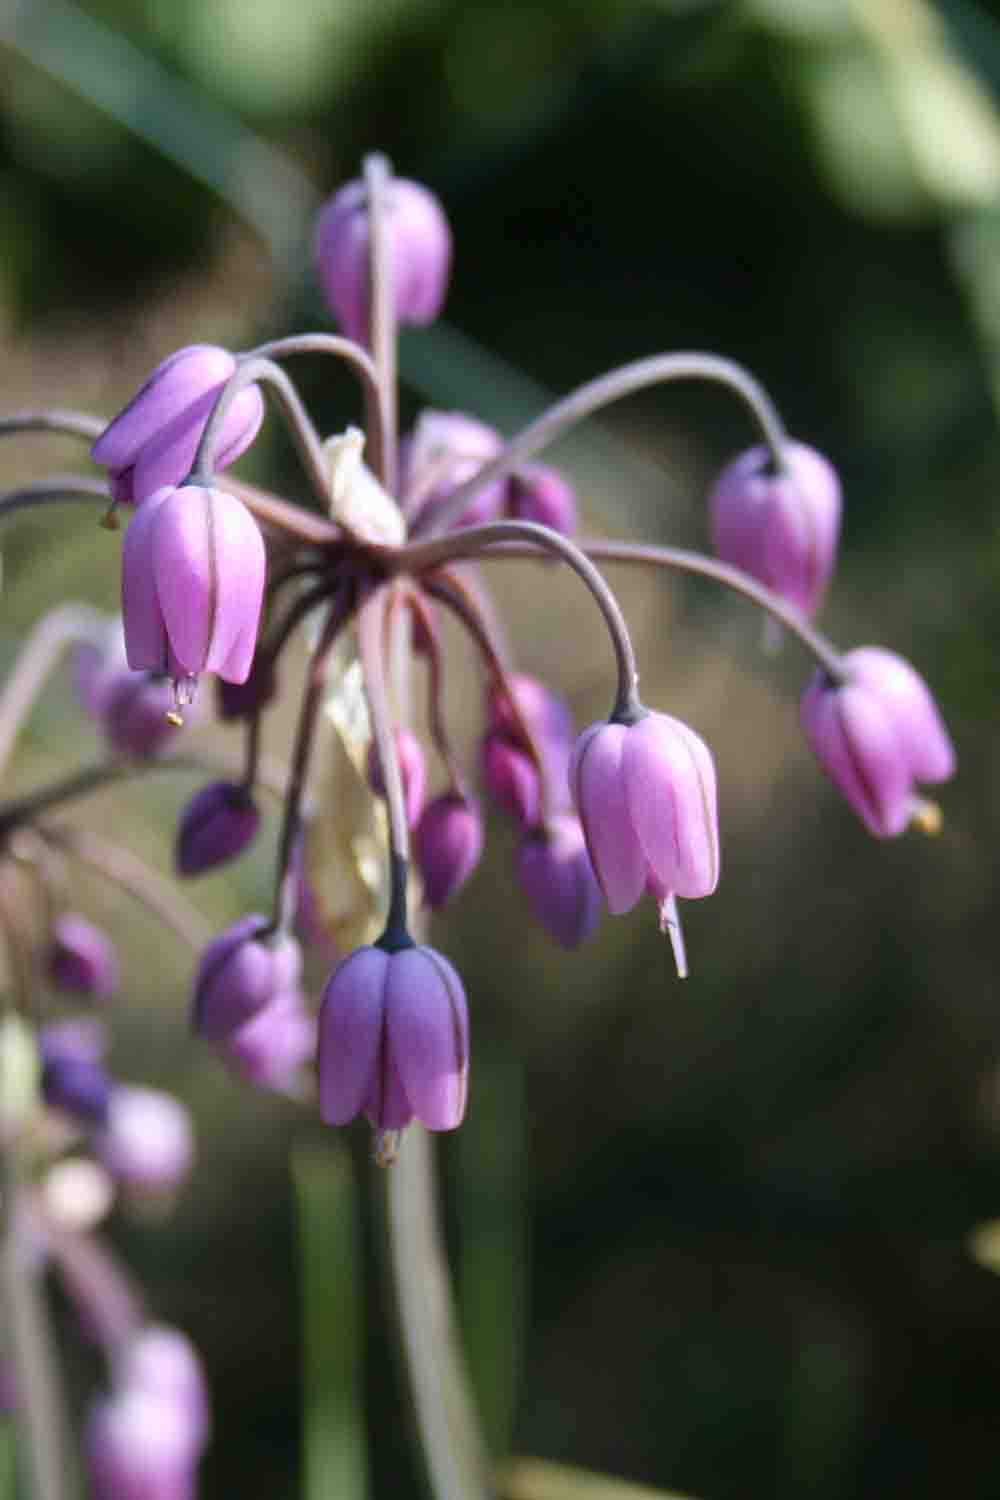 Allium macranthum